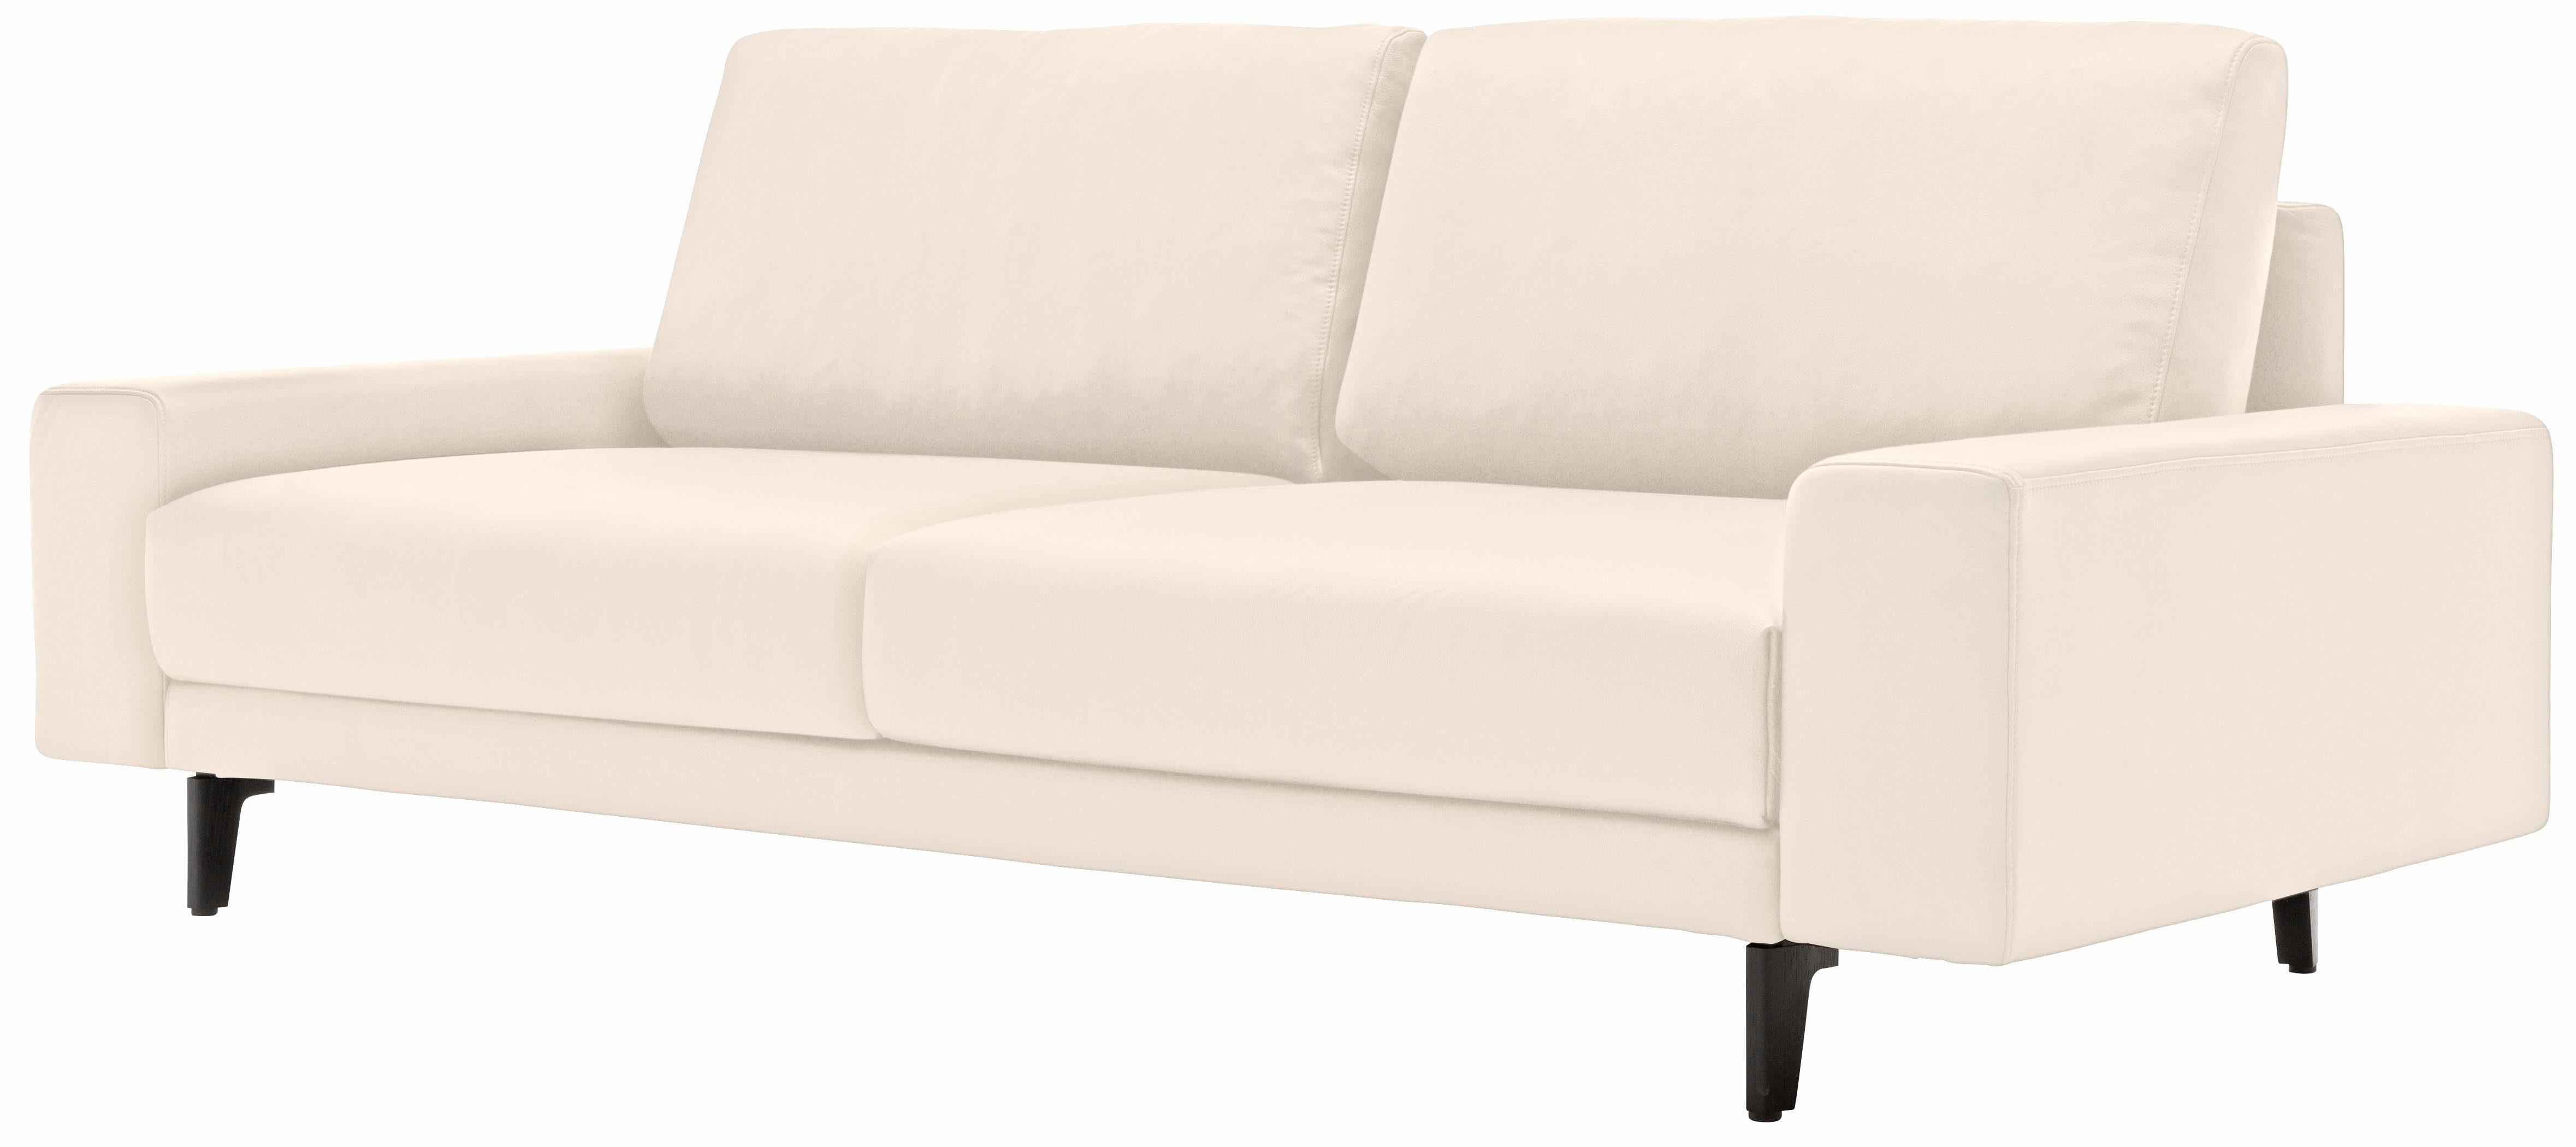 hülsta sofa 2-Sitzer hs.450, Armlehne breit niedrig, Alugussfüße in umbragrau, Breite 180 cm | Einzelsofas